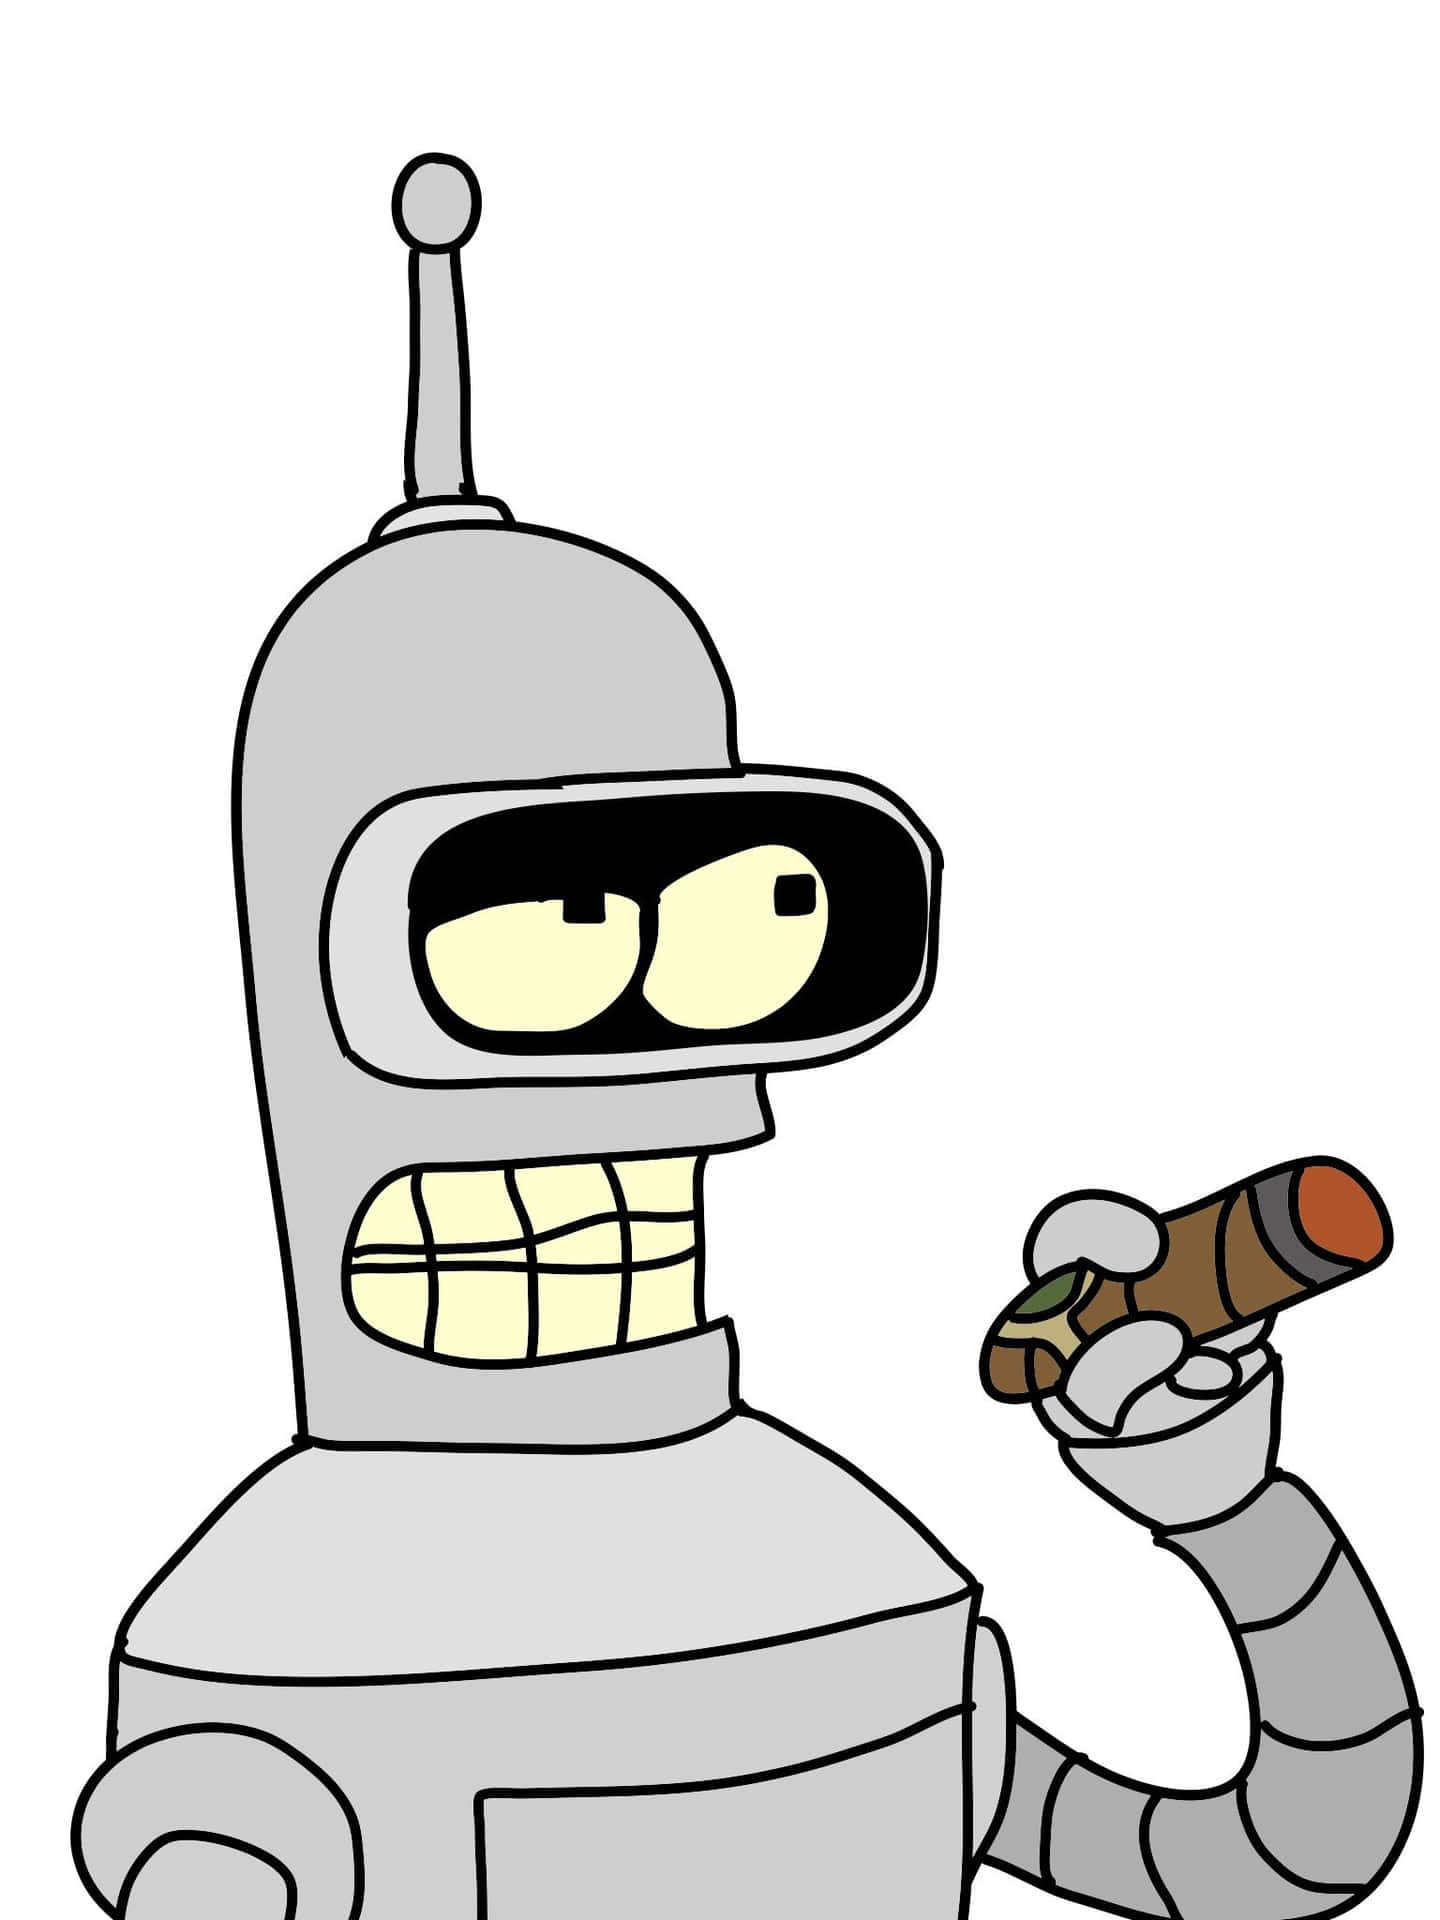 Immaginidi Bender Di Futurama.